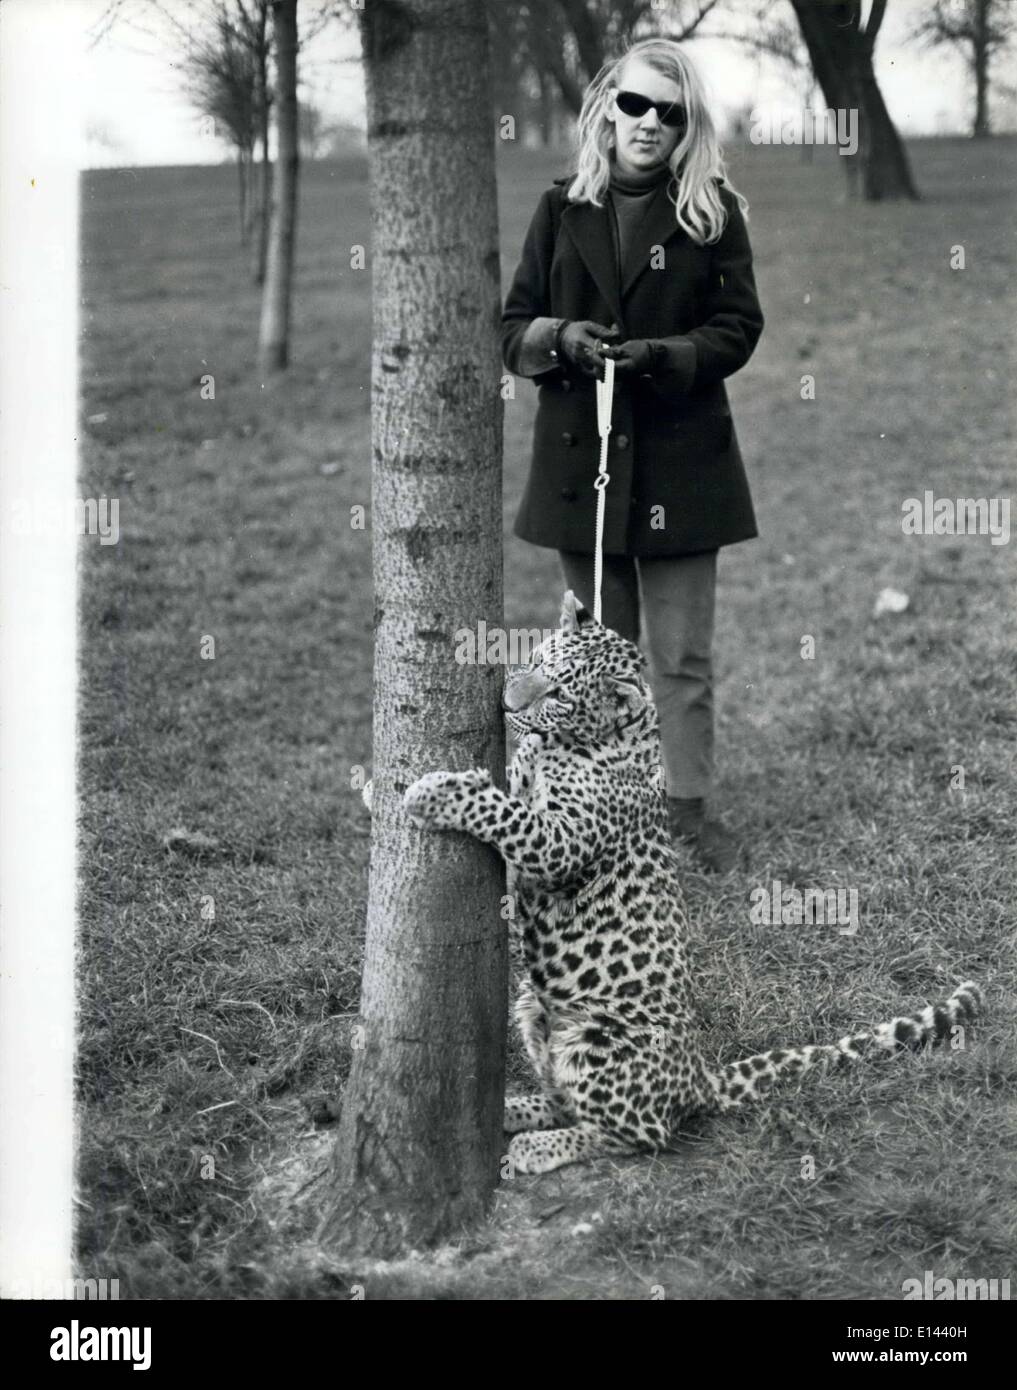 04 aprile 2012 - Angela porta il suo leopardo, Michael, per la sua passeggiata nei Giardini di Kensington. Ha comprato Micheal per 200 nei negozi Tyseley PET a Birmingham. . I problemi di mantenere un PT Cat: Angels McWilliams, un segretario part-time di 23 anni di Kensington, si possono spesso vedere prendendo Michael, il suo gatto adatto per una passeggiata in Kensington Gardens e di solito provoca oute un agitazione. Per Michael non è fuori ordinario - è un bub leopardo di otto mesi. Angeli ama i gatti - grandi - aveva un puma ma morì, così per sostituirlo ha comprato Michael Foto Stock